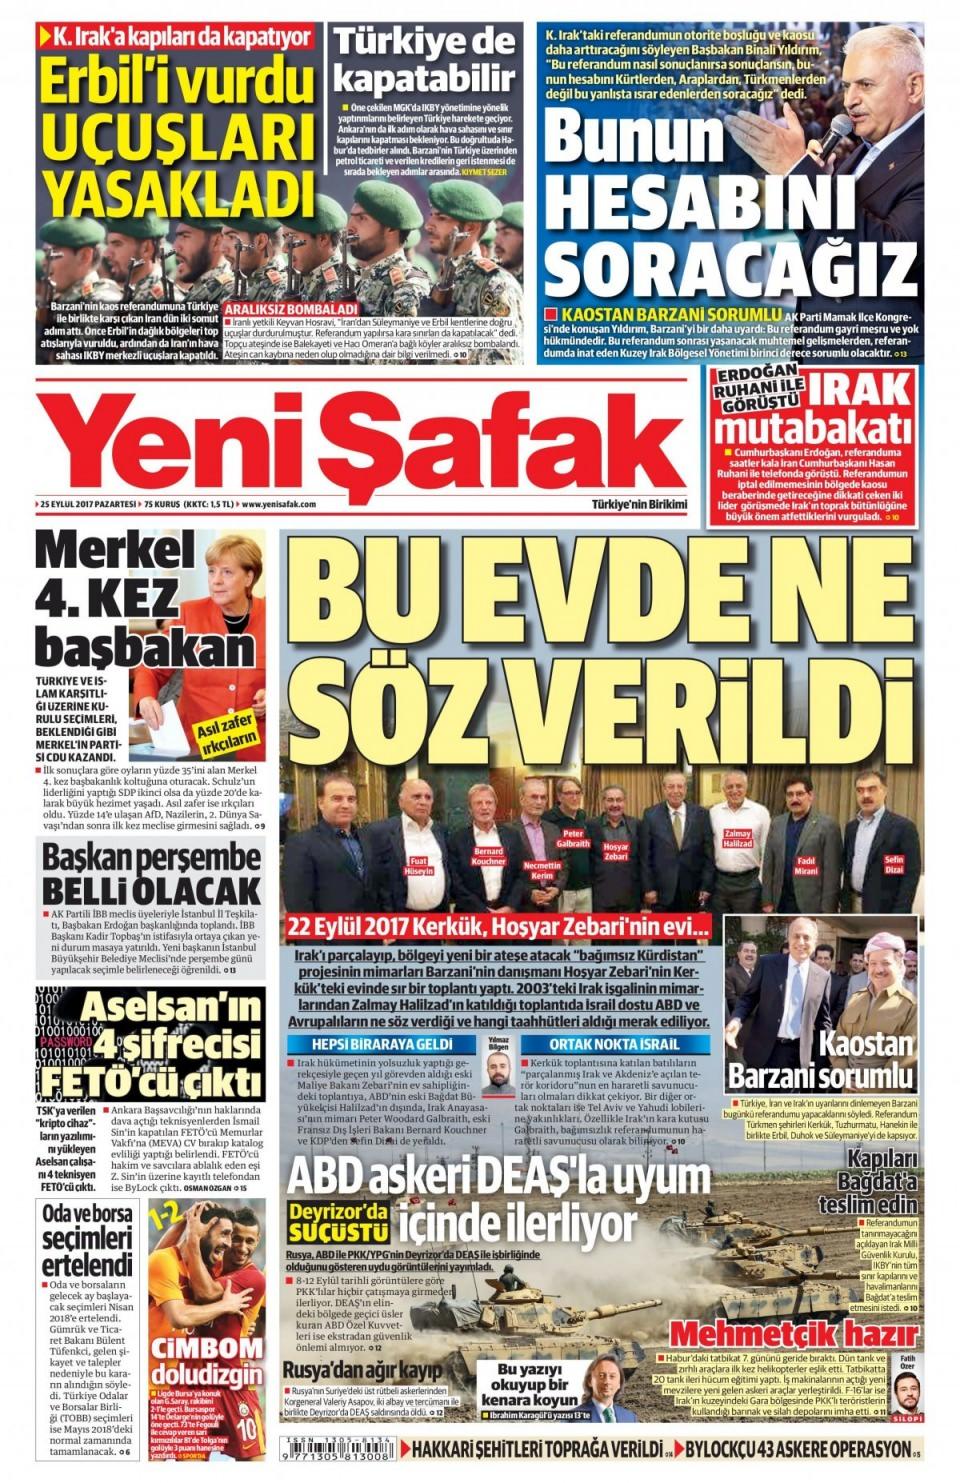 <p>Bugün yapılacak Kuzey Irak referandumu Türkiye'deki gazete manşetlerine böyle yansıdı...</p>
